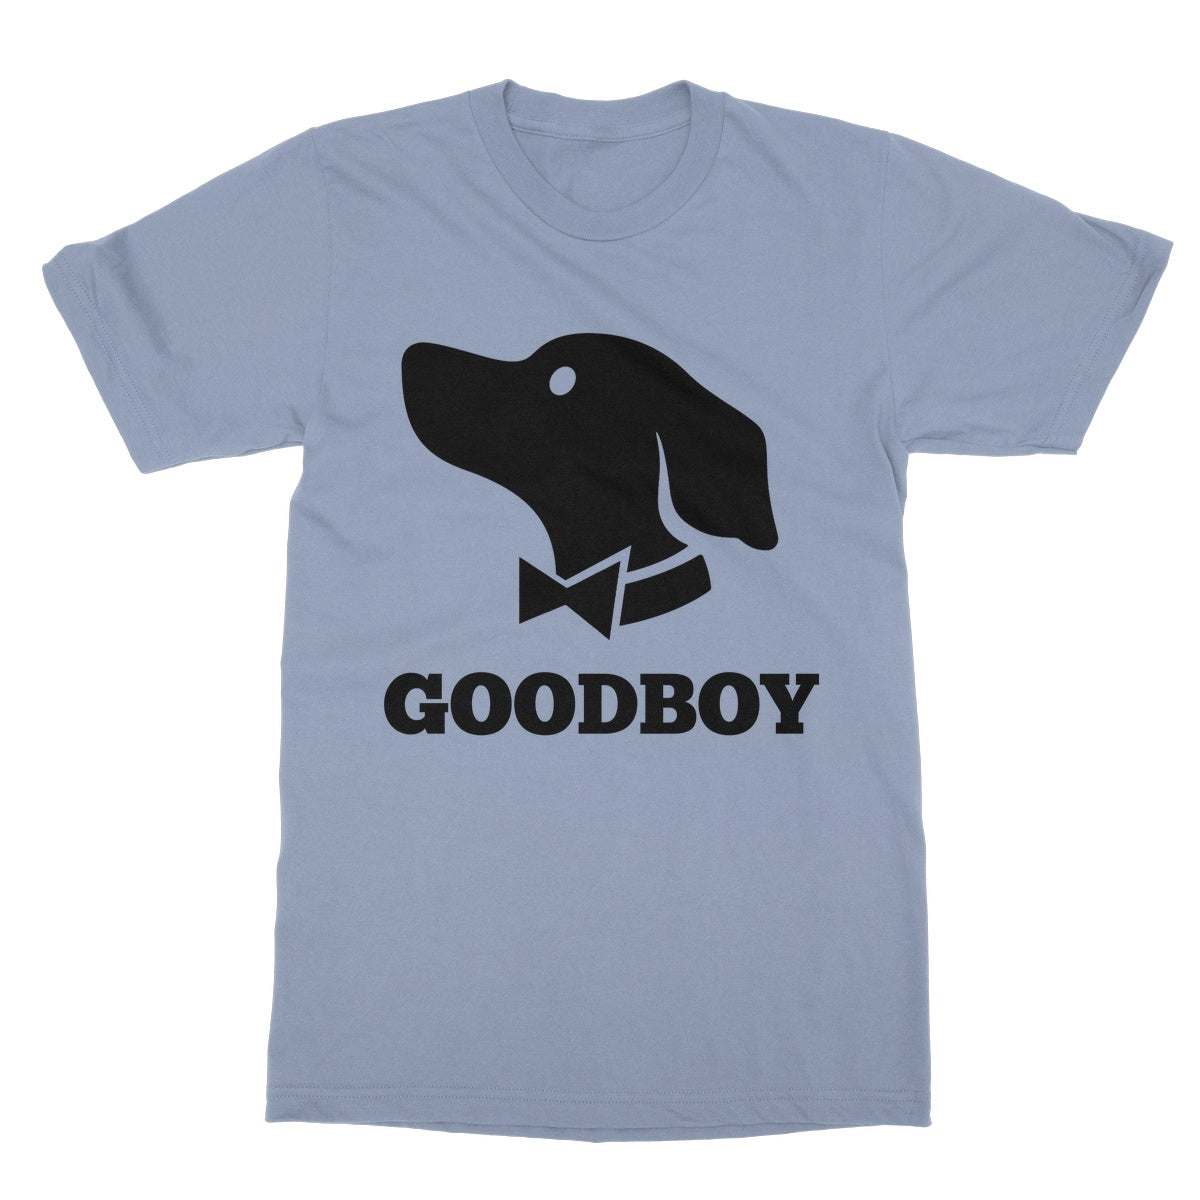 goodboy t shirt blue